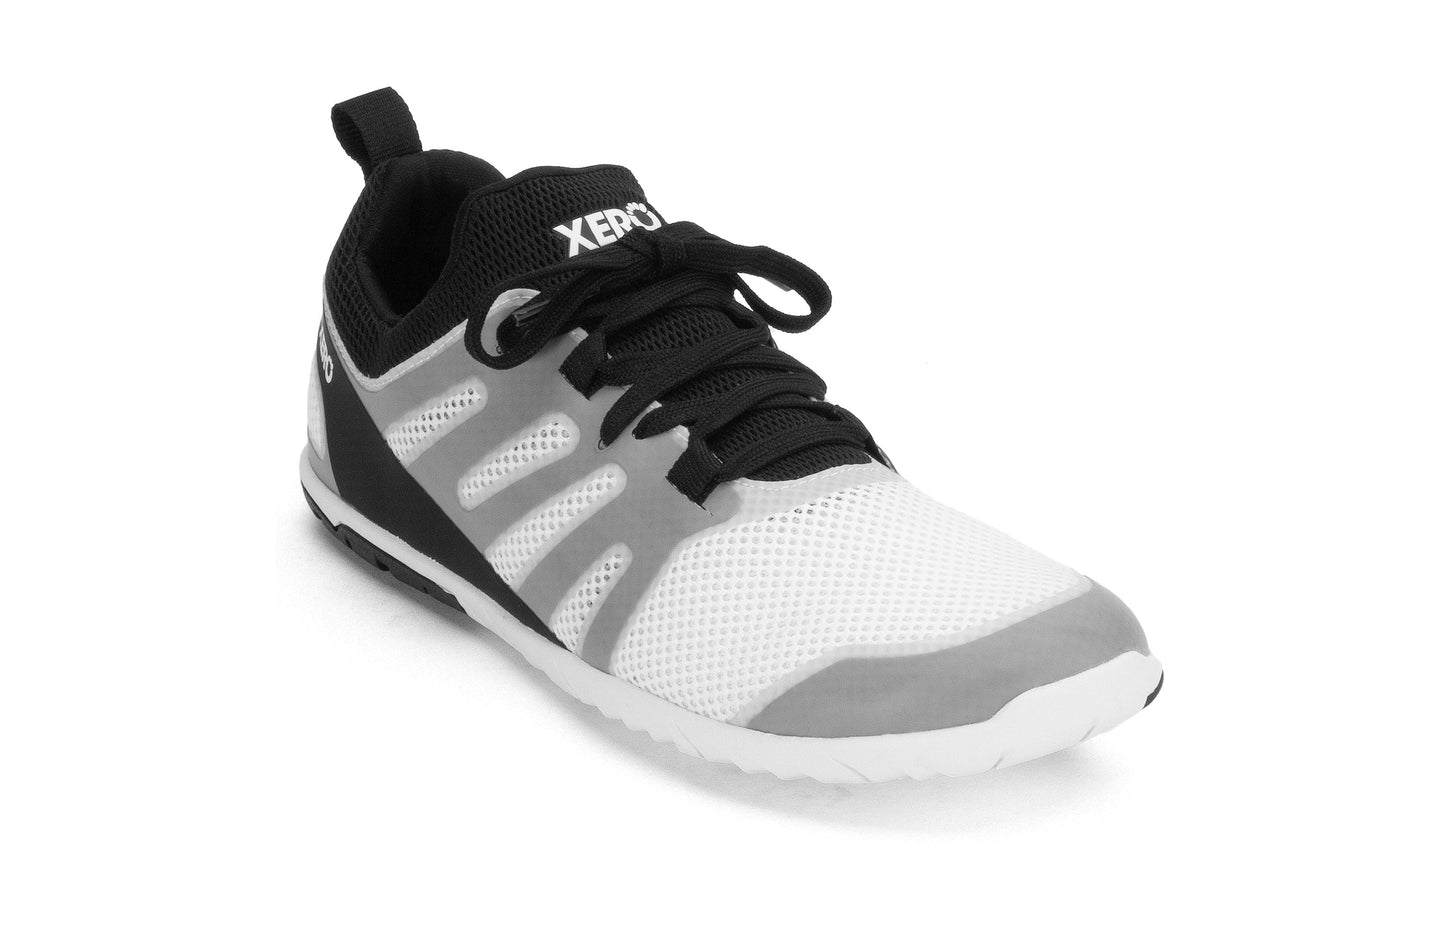 Xero Shoes Forza Runner Womens barfods løbesko til kvinder i farven white/black, vinklet